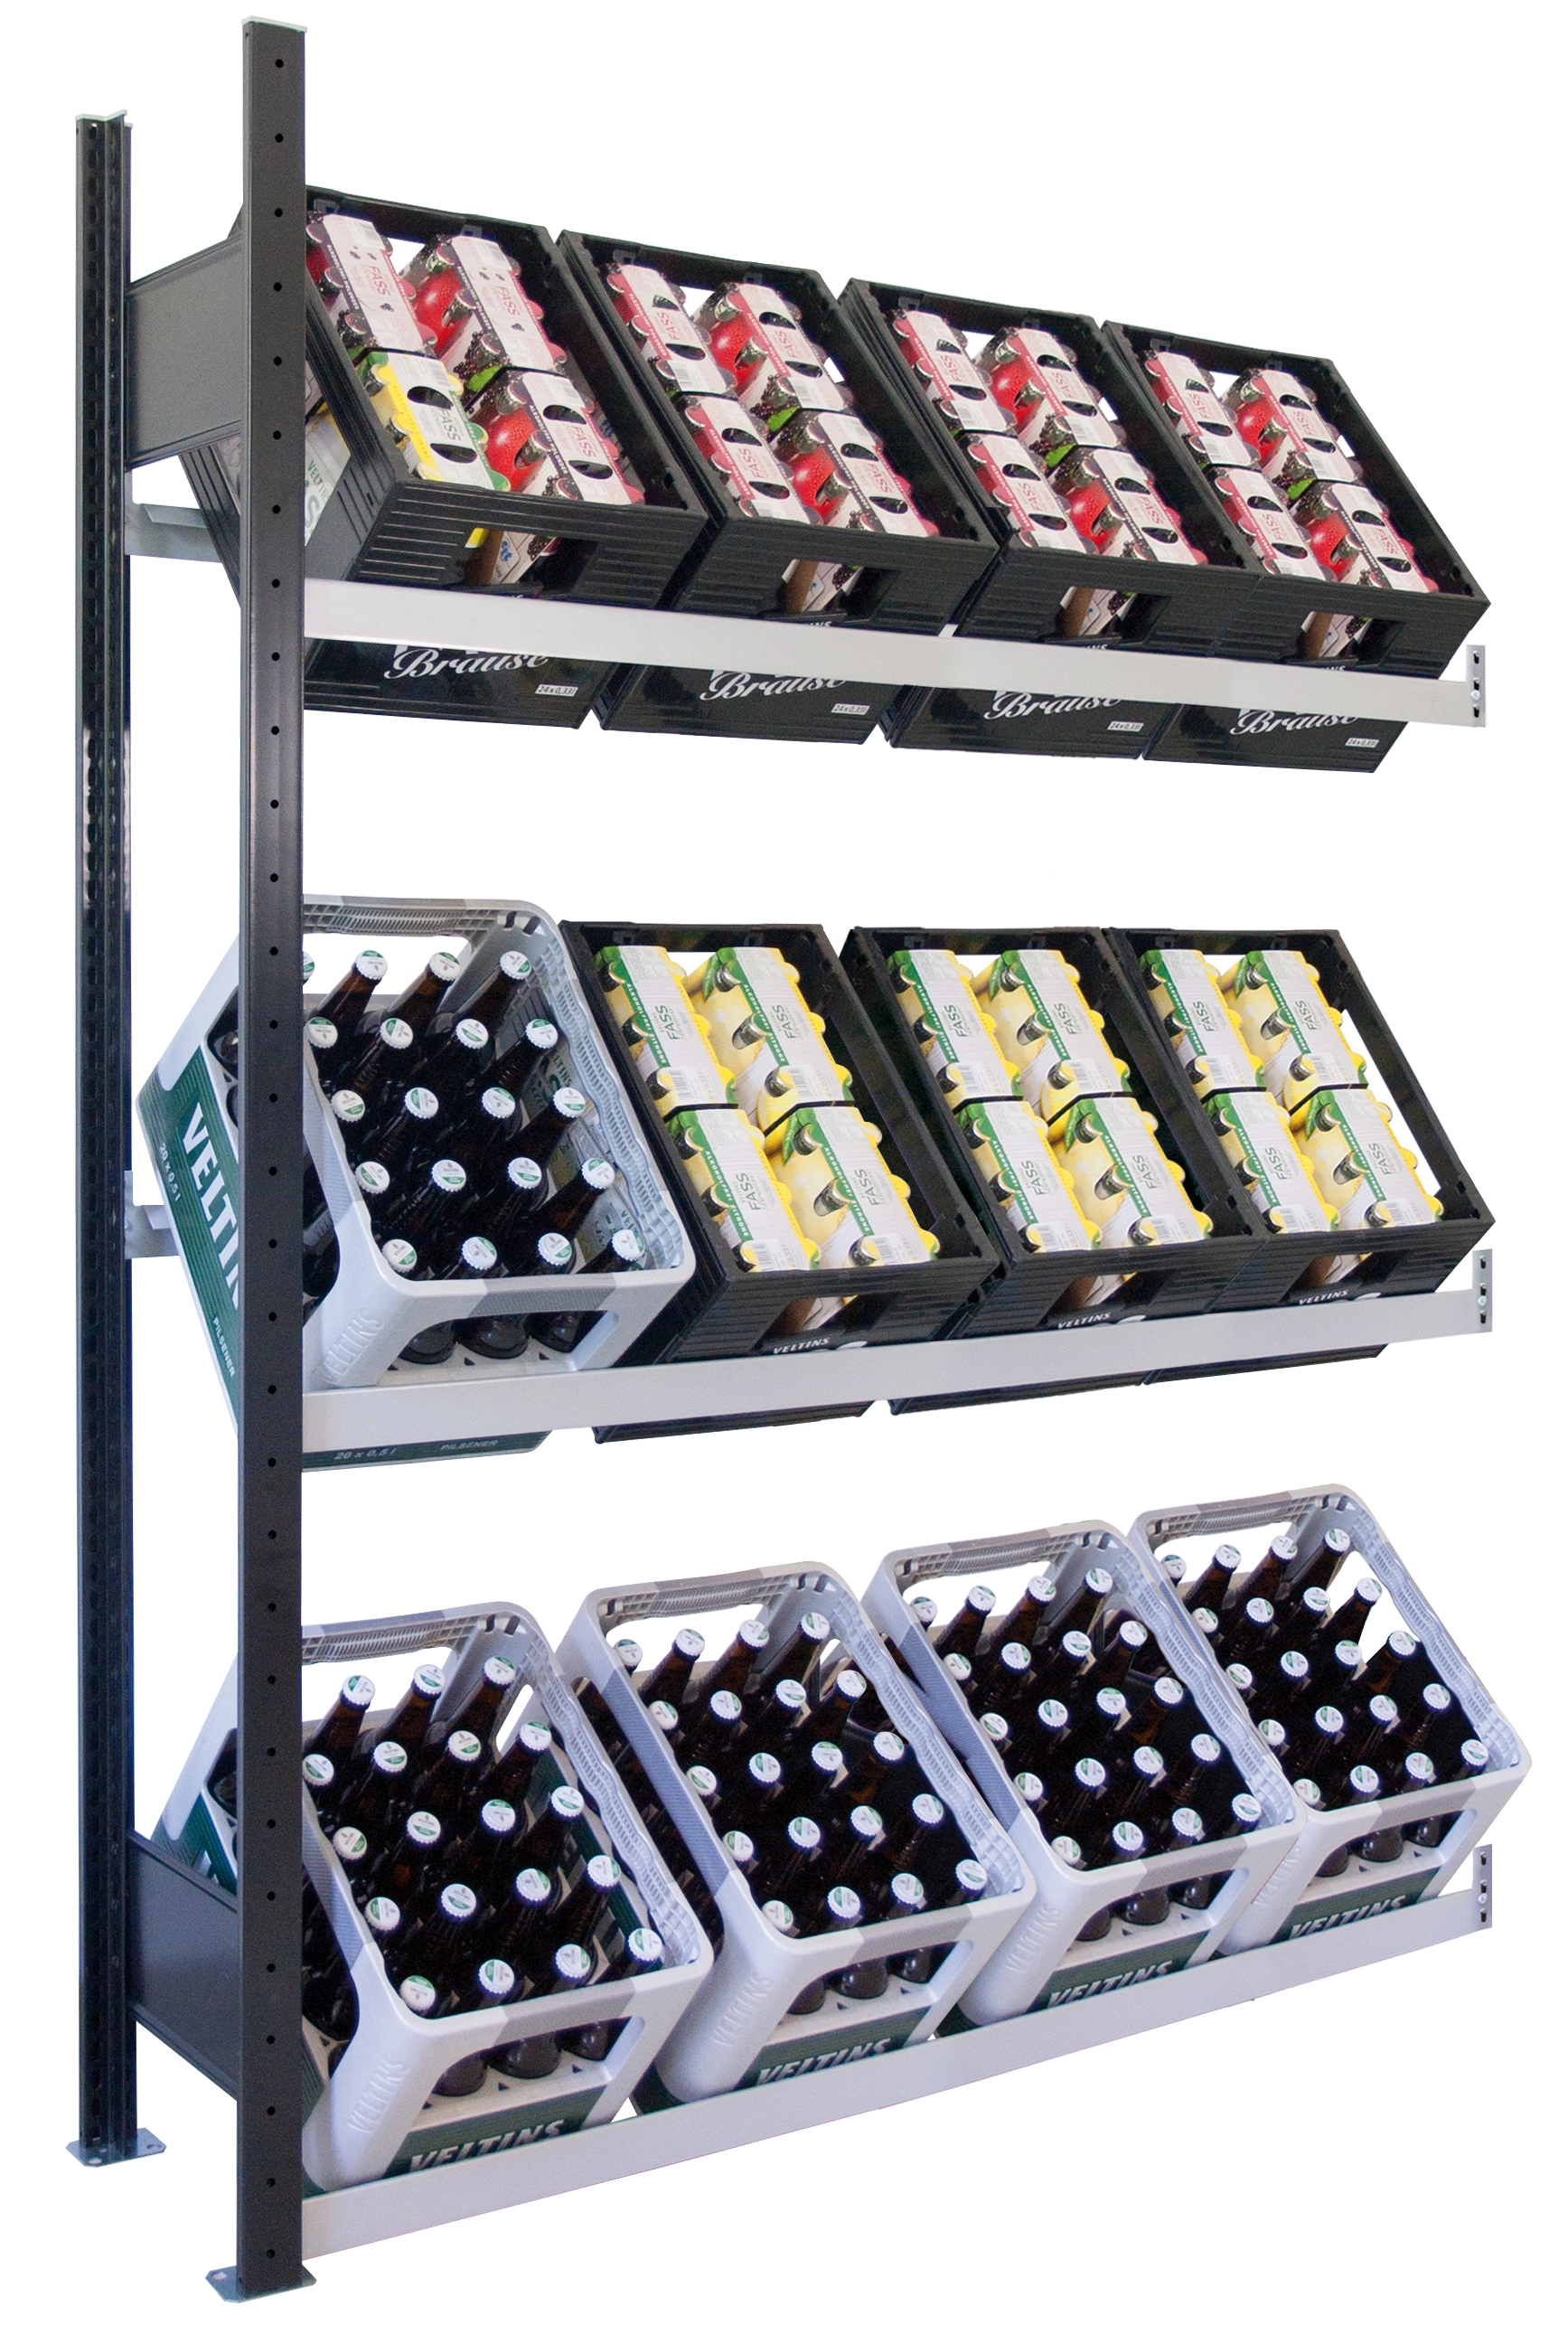 Schulte Getränkekistenregal | Anbauregal | HxBxT 180x130x30cm | 3 Ebenen für 12 Getränkekisten | Schwarz/Silber